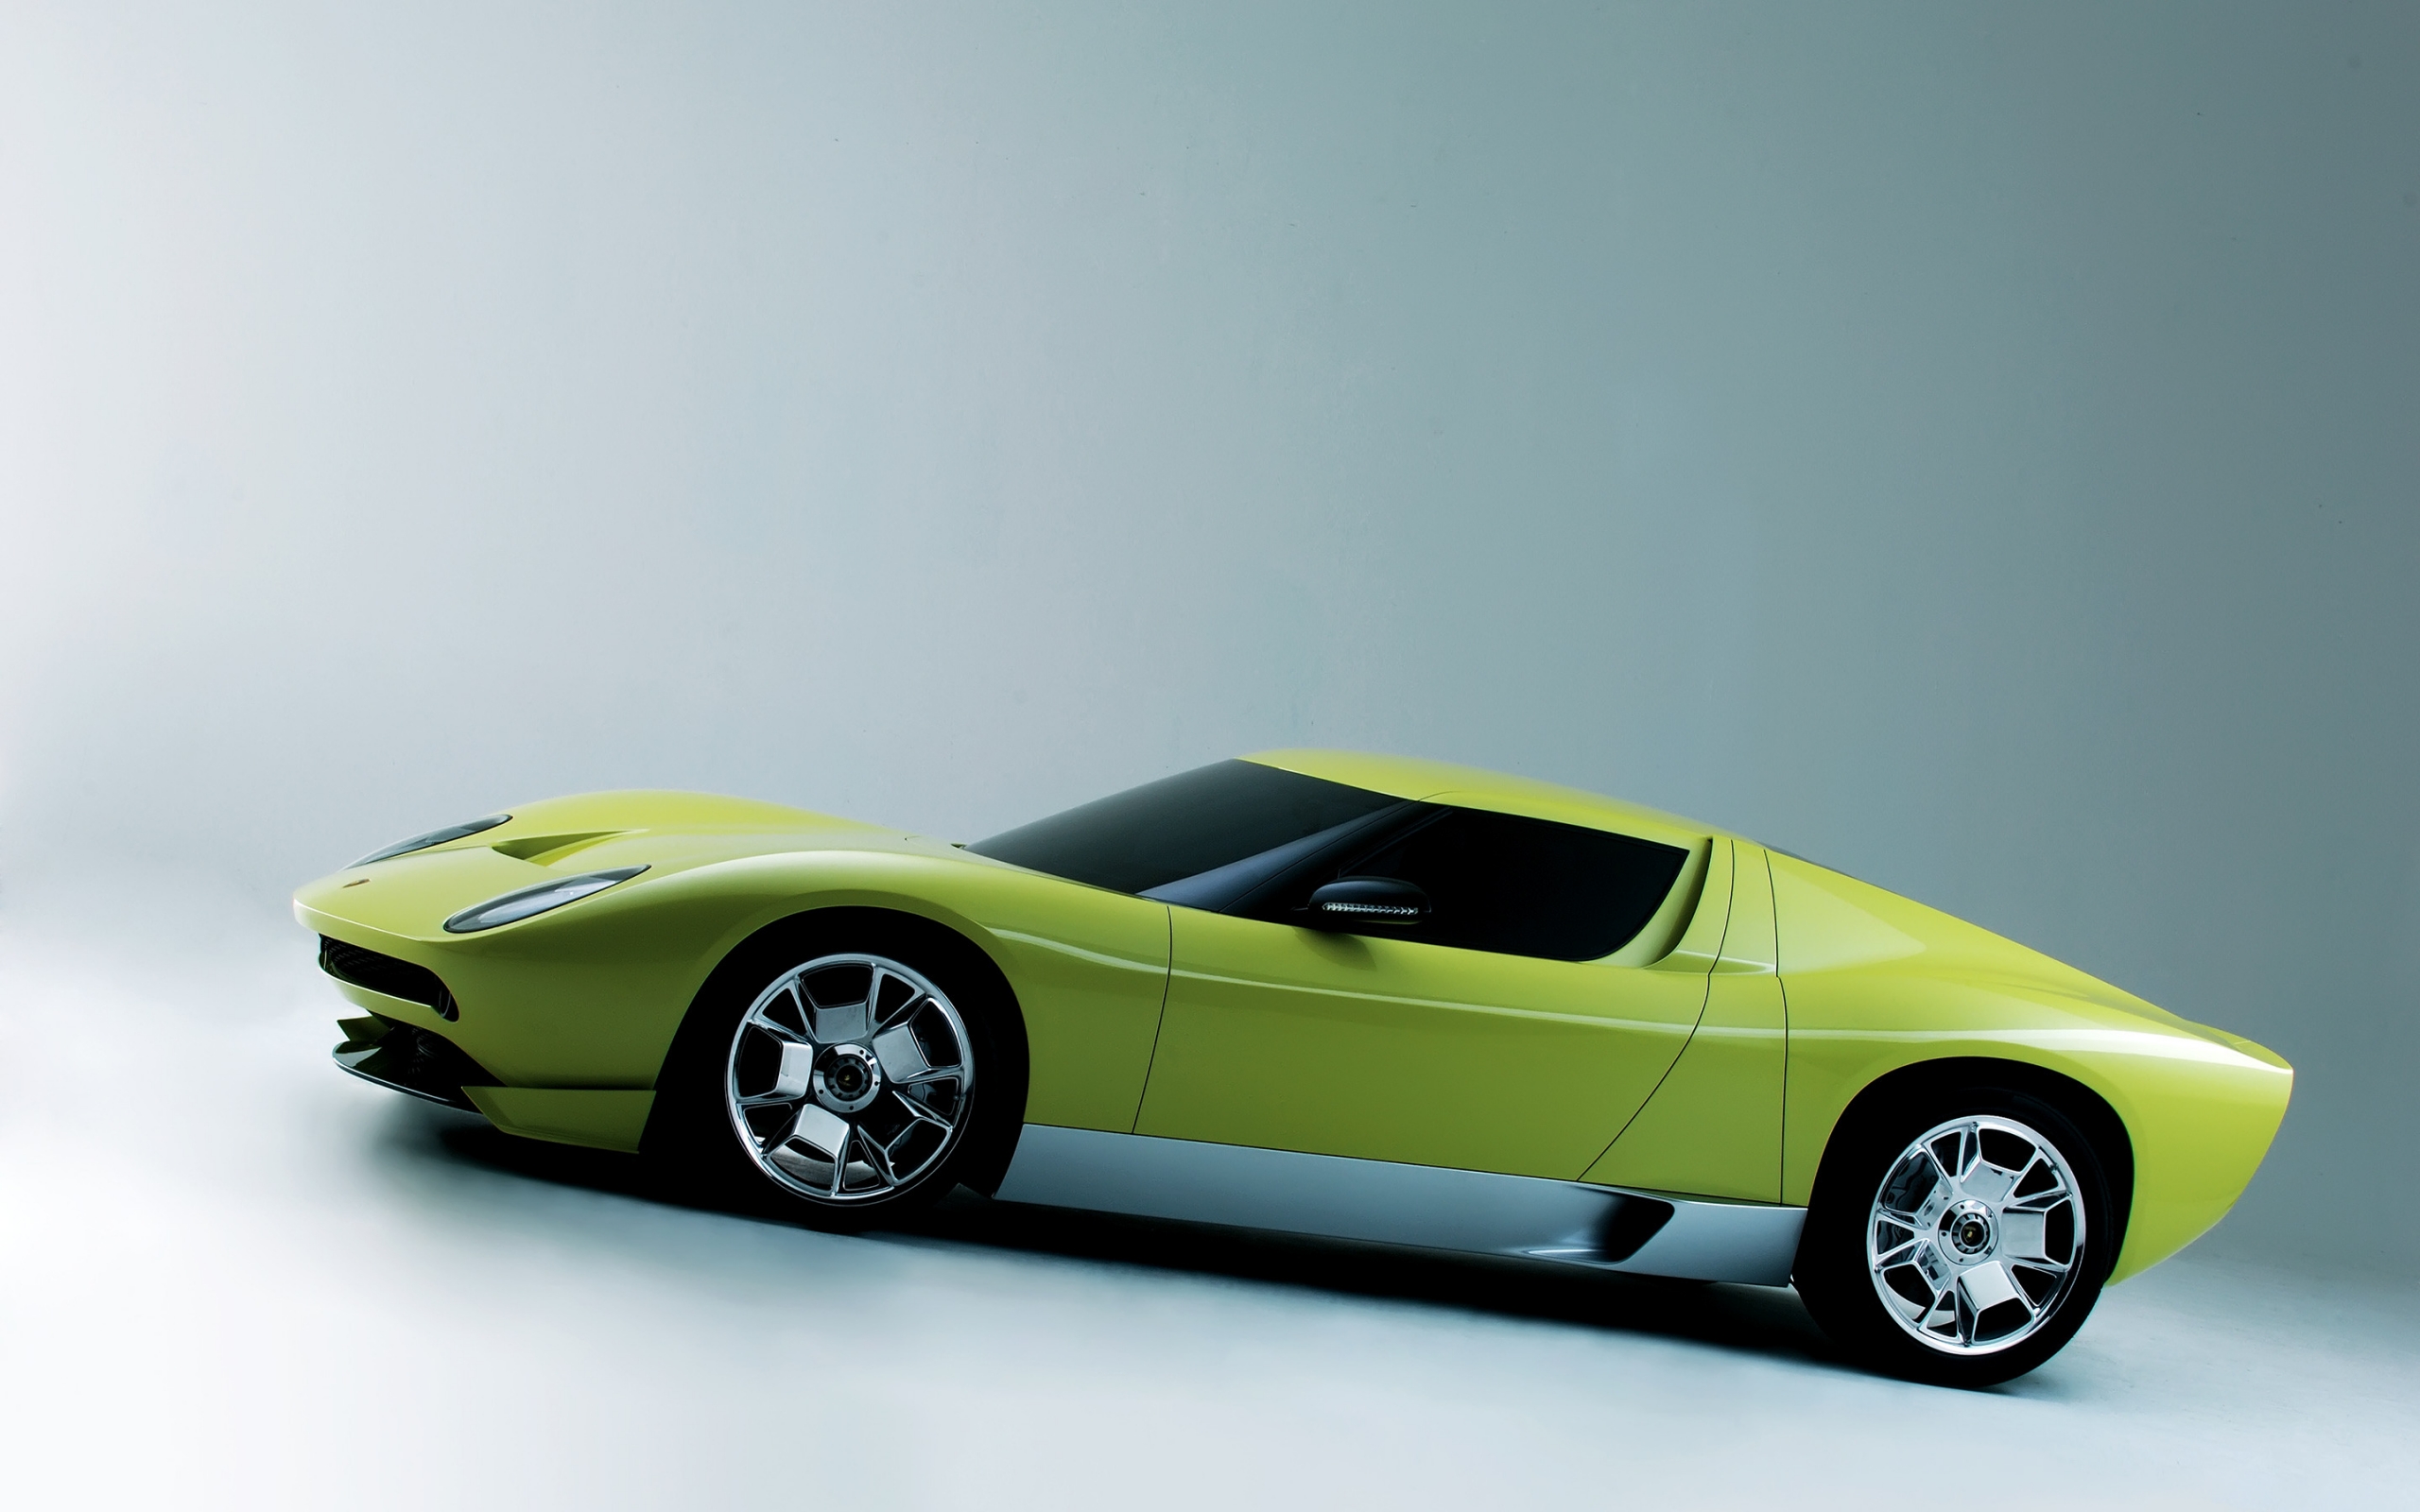 Lamborghini Miura Concept Side for 2560 x 1600 widescreen resolution